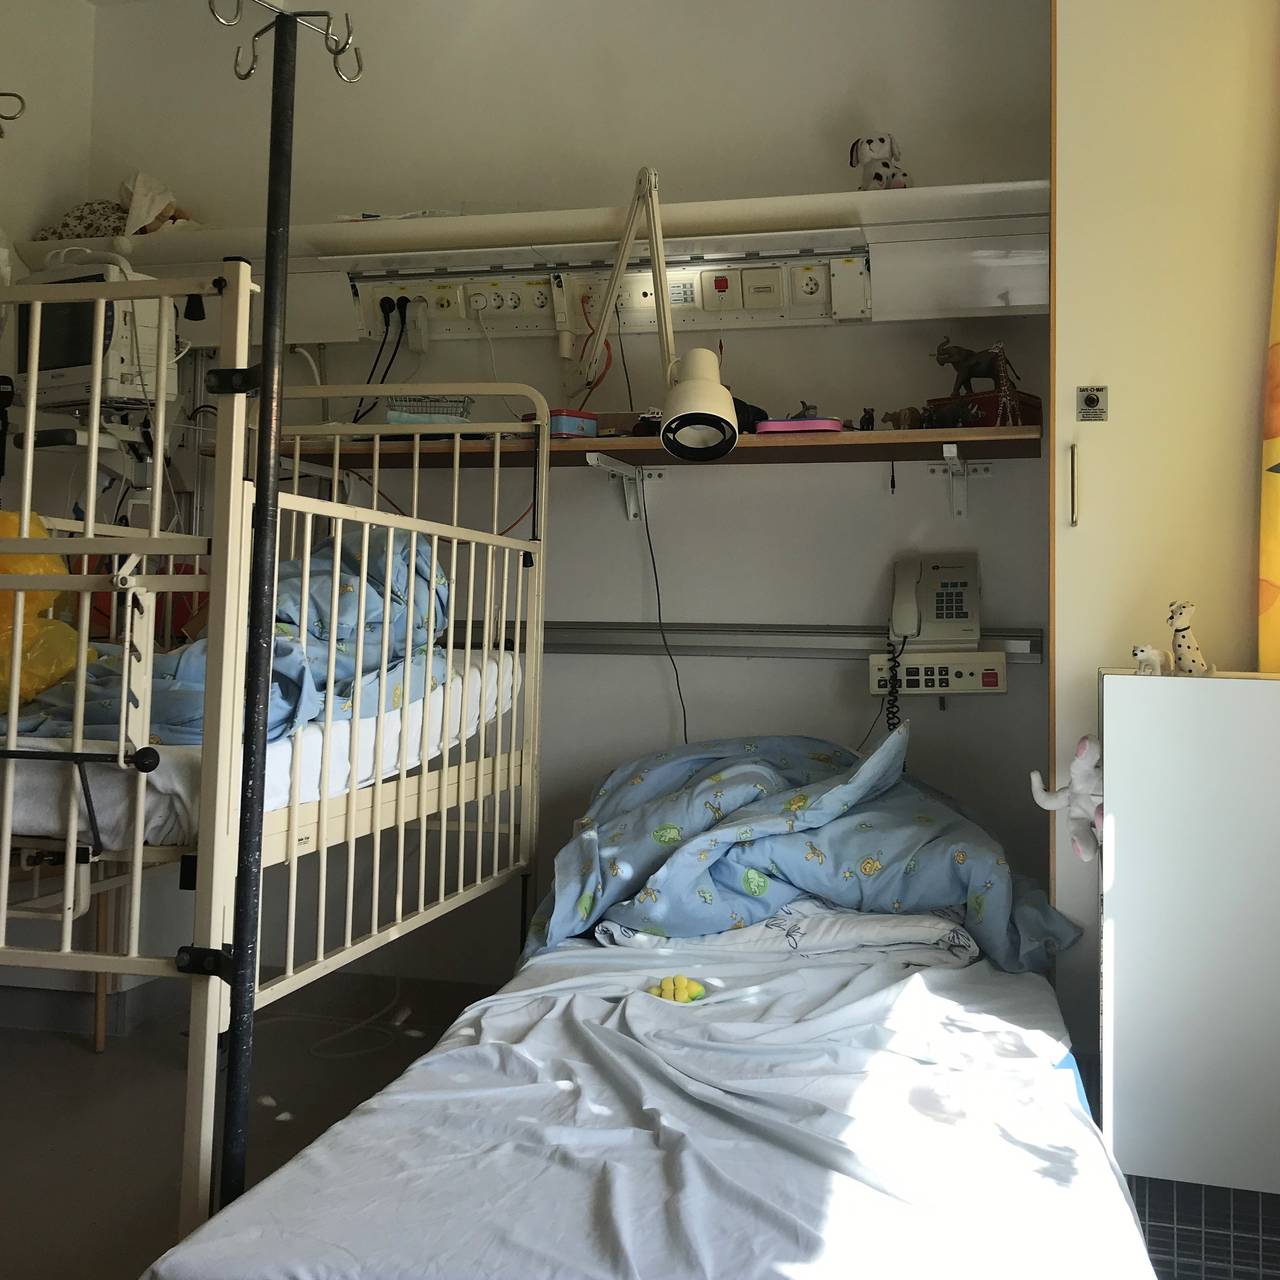 La figlia ha trascorso diversi mesi in isolamento.  Questo significa 12 metri quadrati da vivere senza possibilità di uscire a rischio di contrarre i batteri ospedalieri.